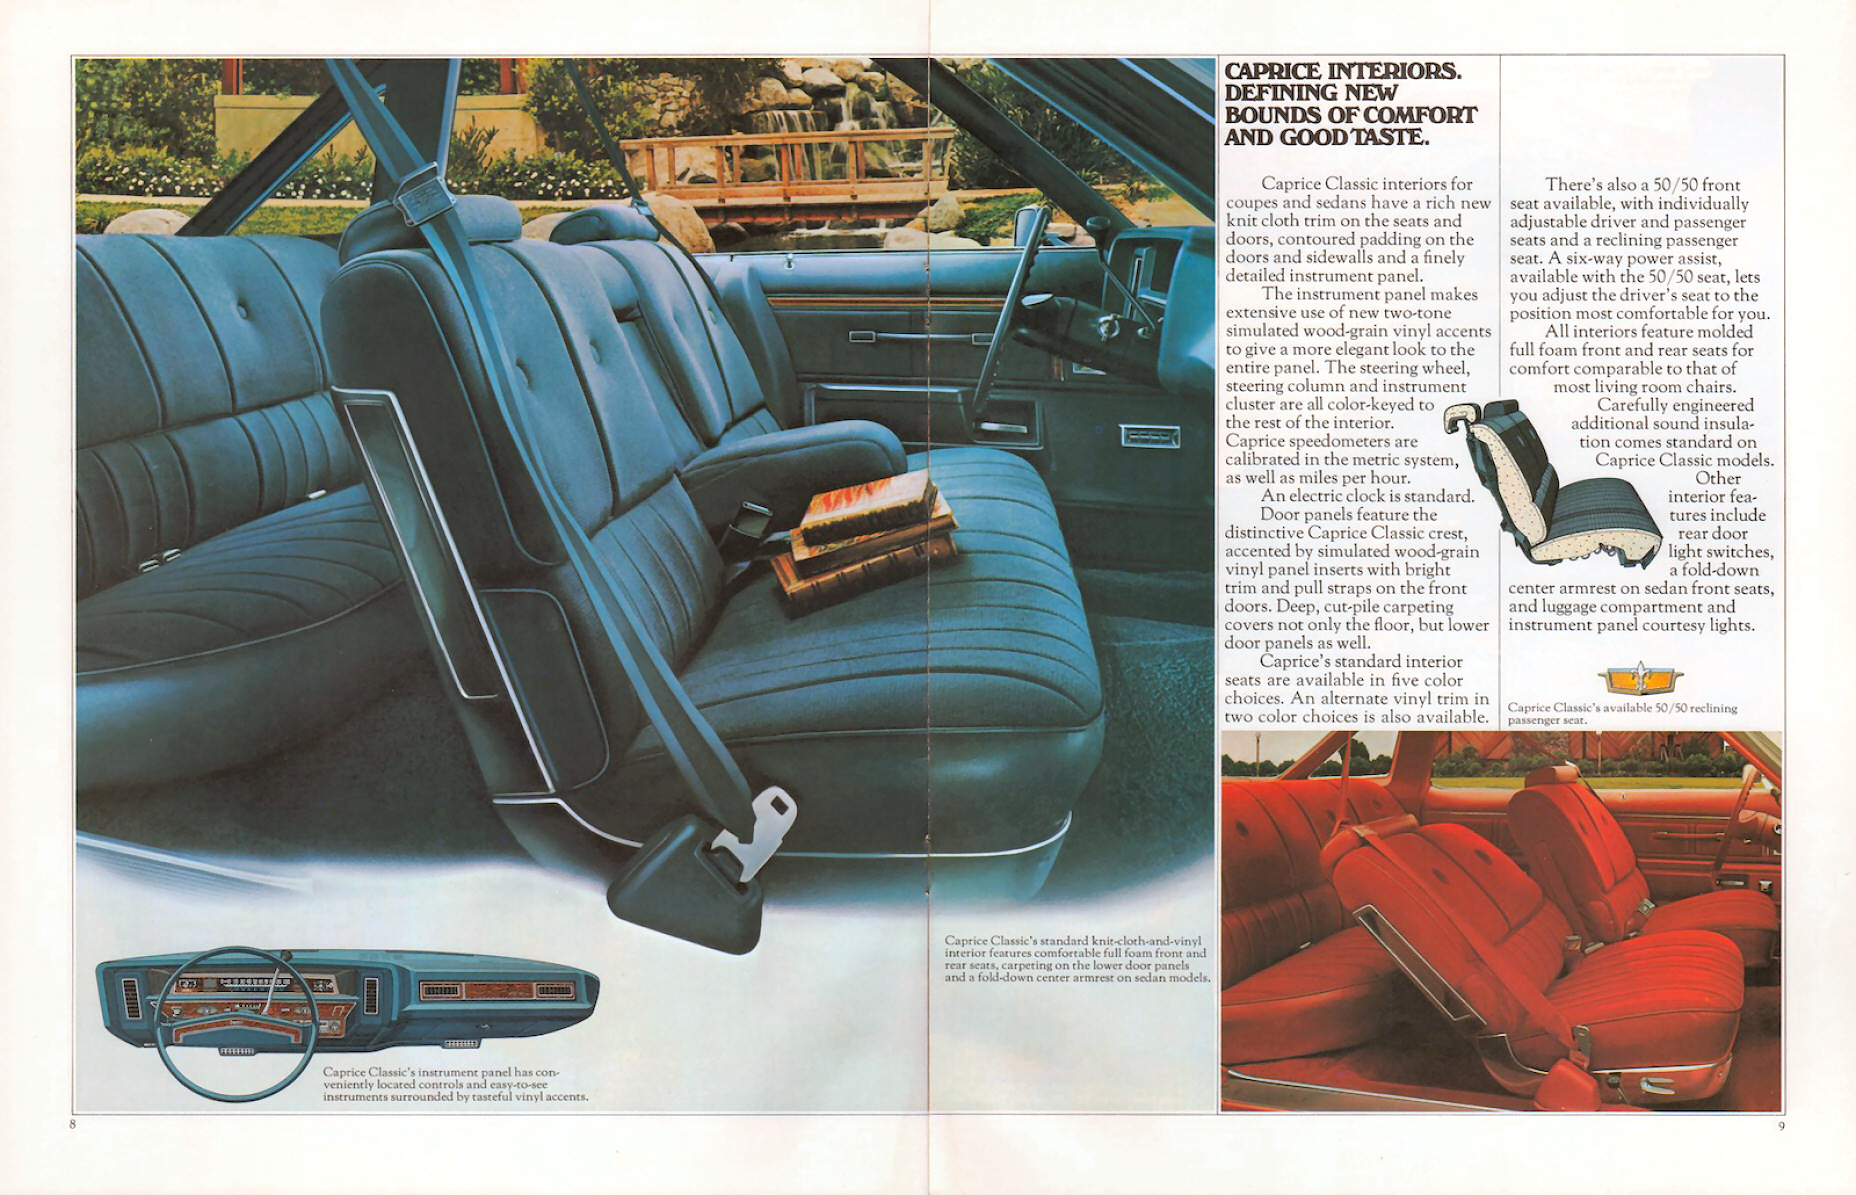 1975_Chevrolet_Full_Size_Rev-08-09